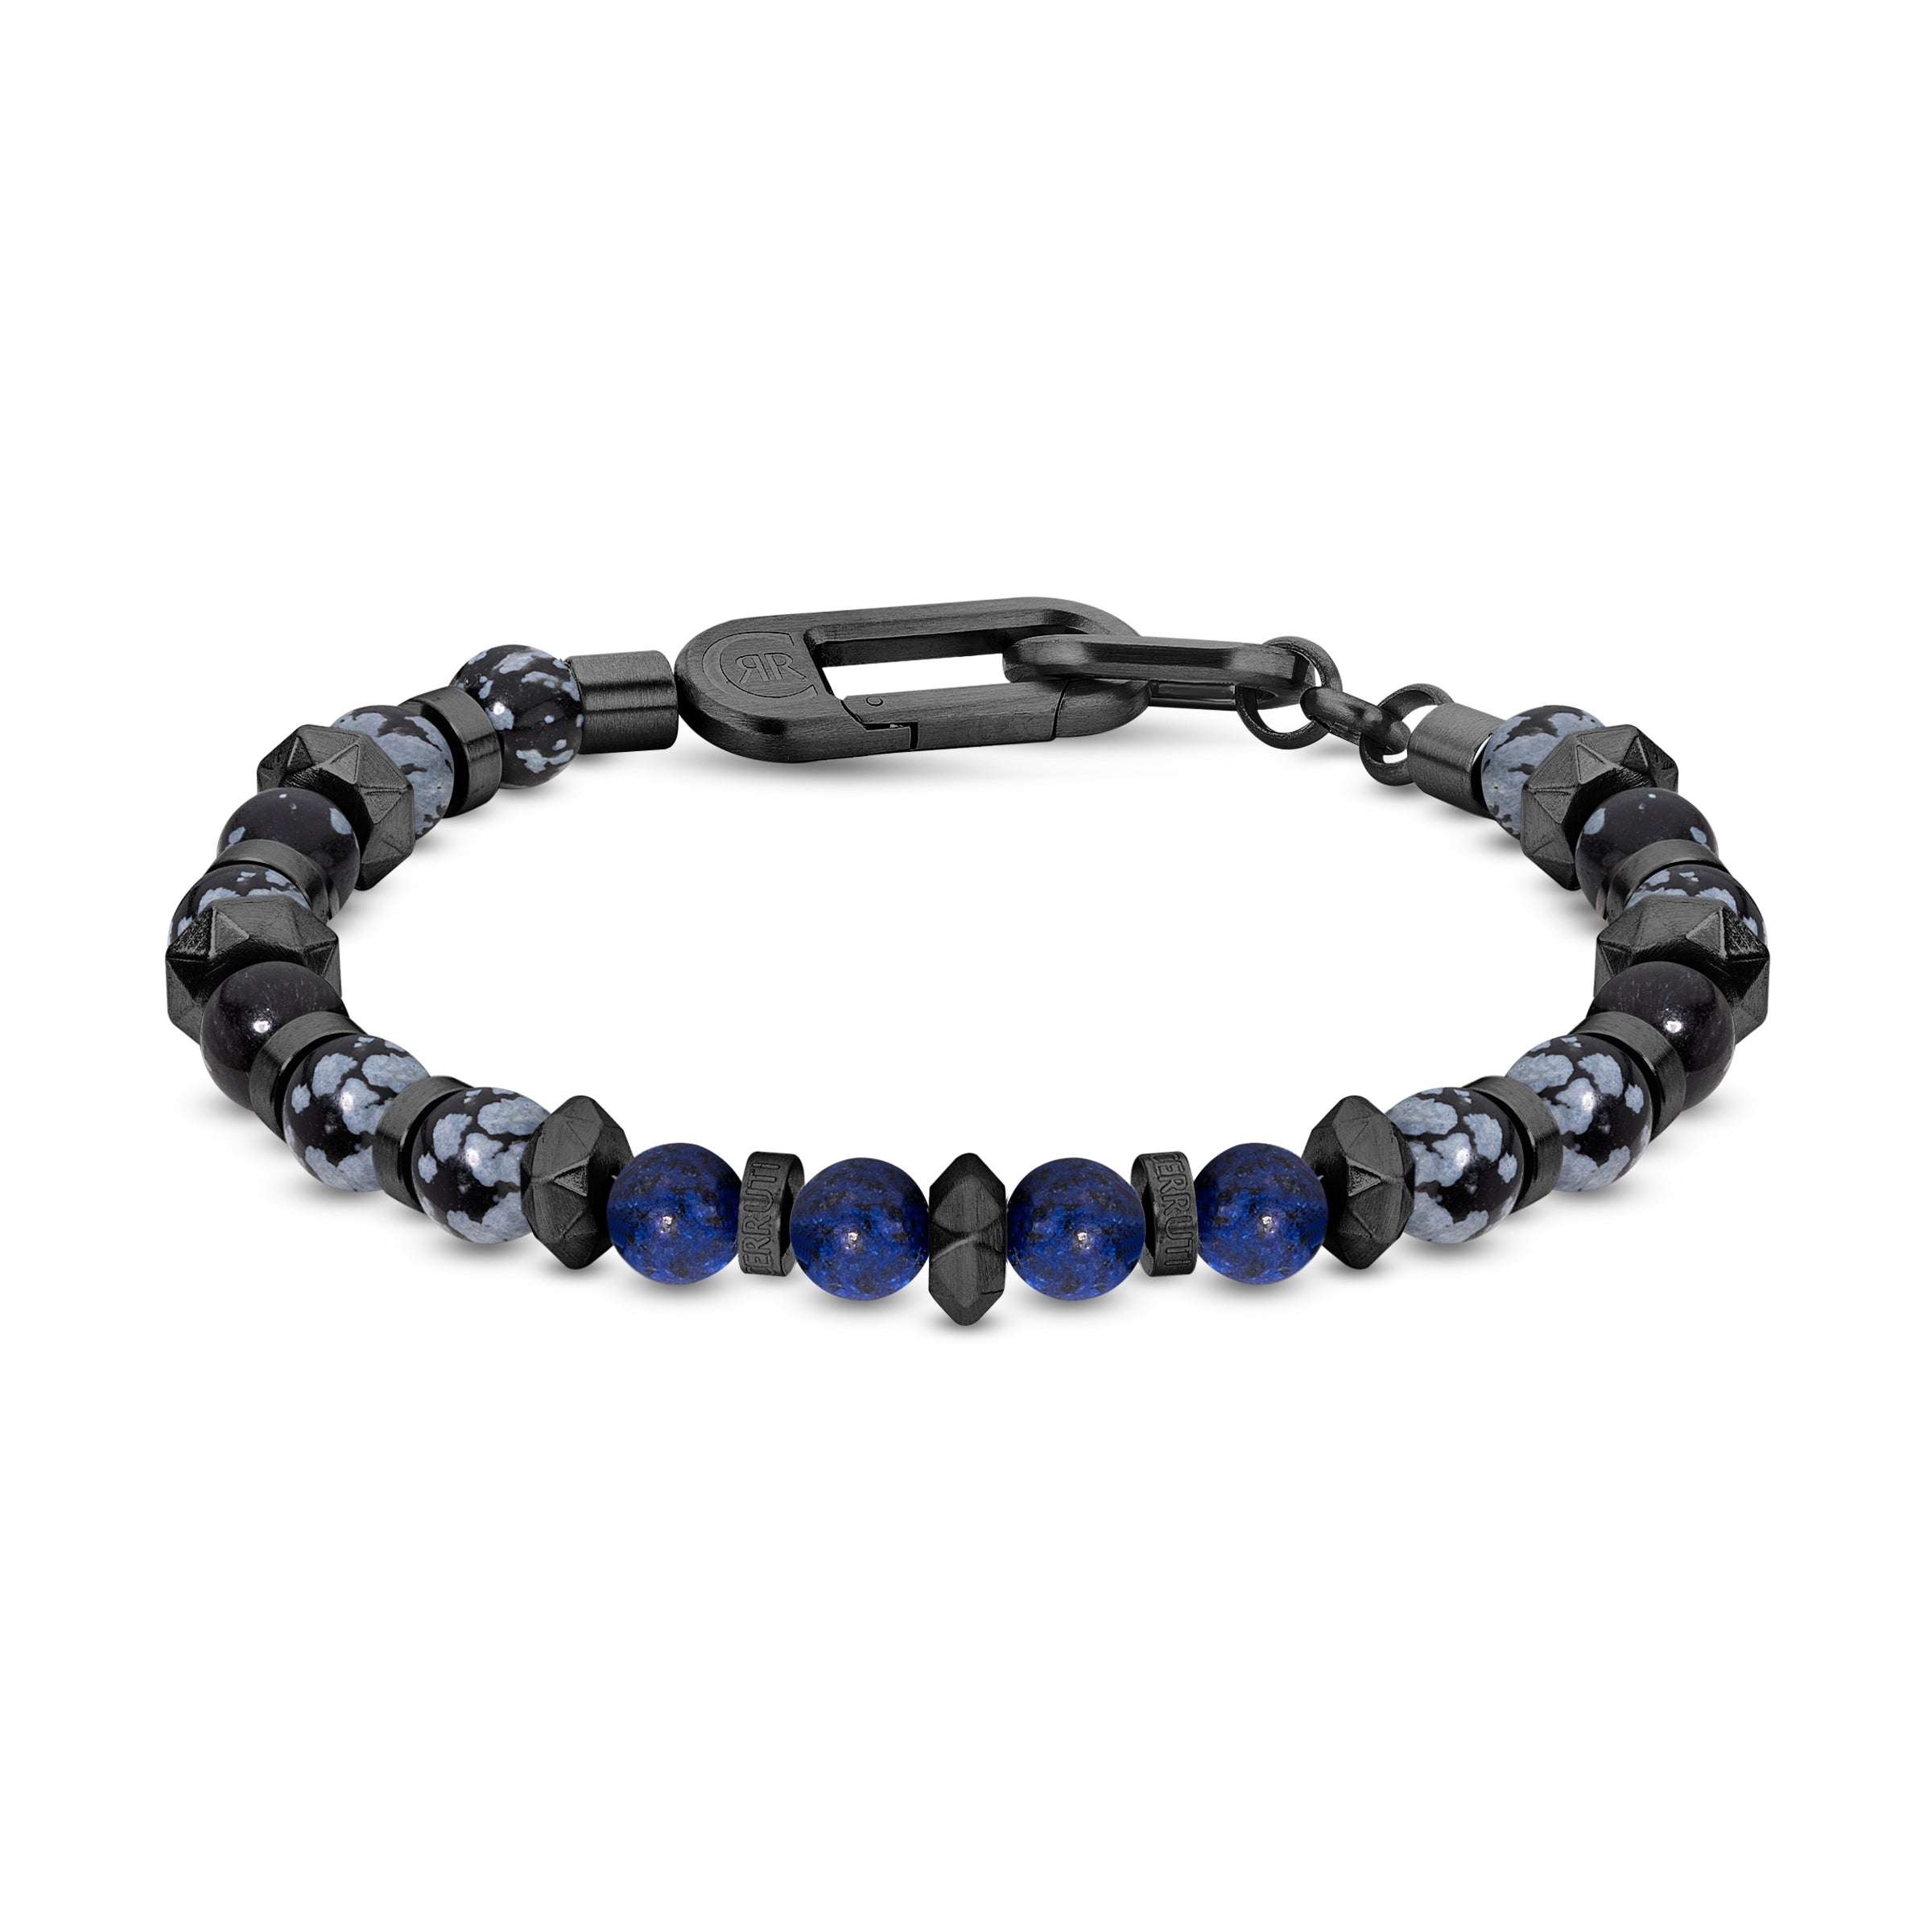 Cerruti Black and Blue Bracelet for Men - CERBR-0005